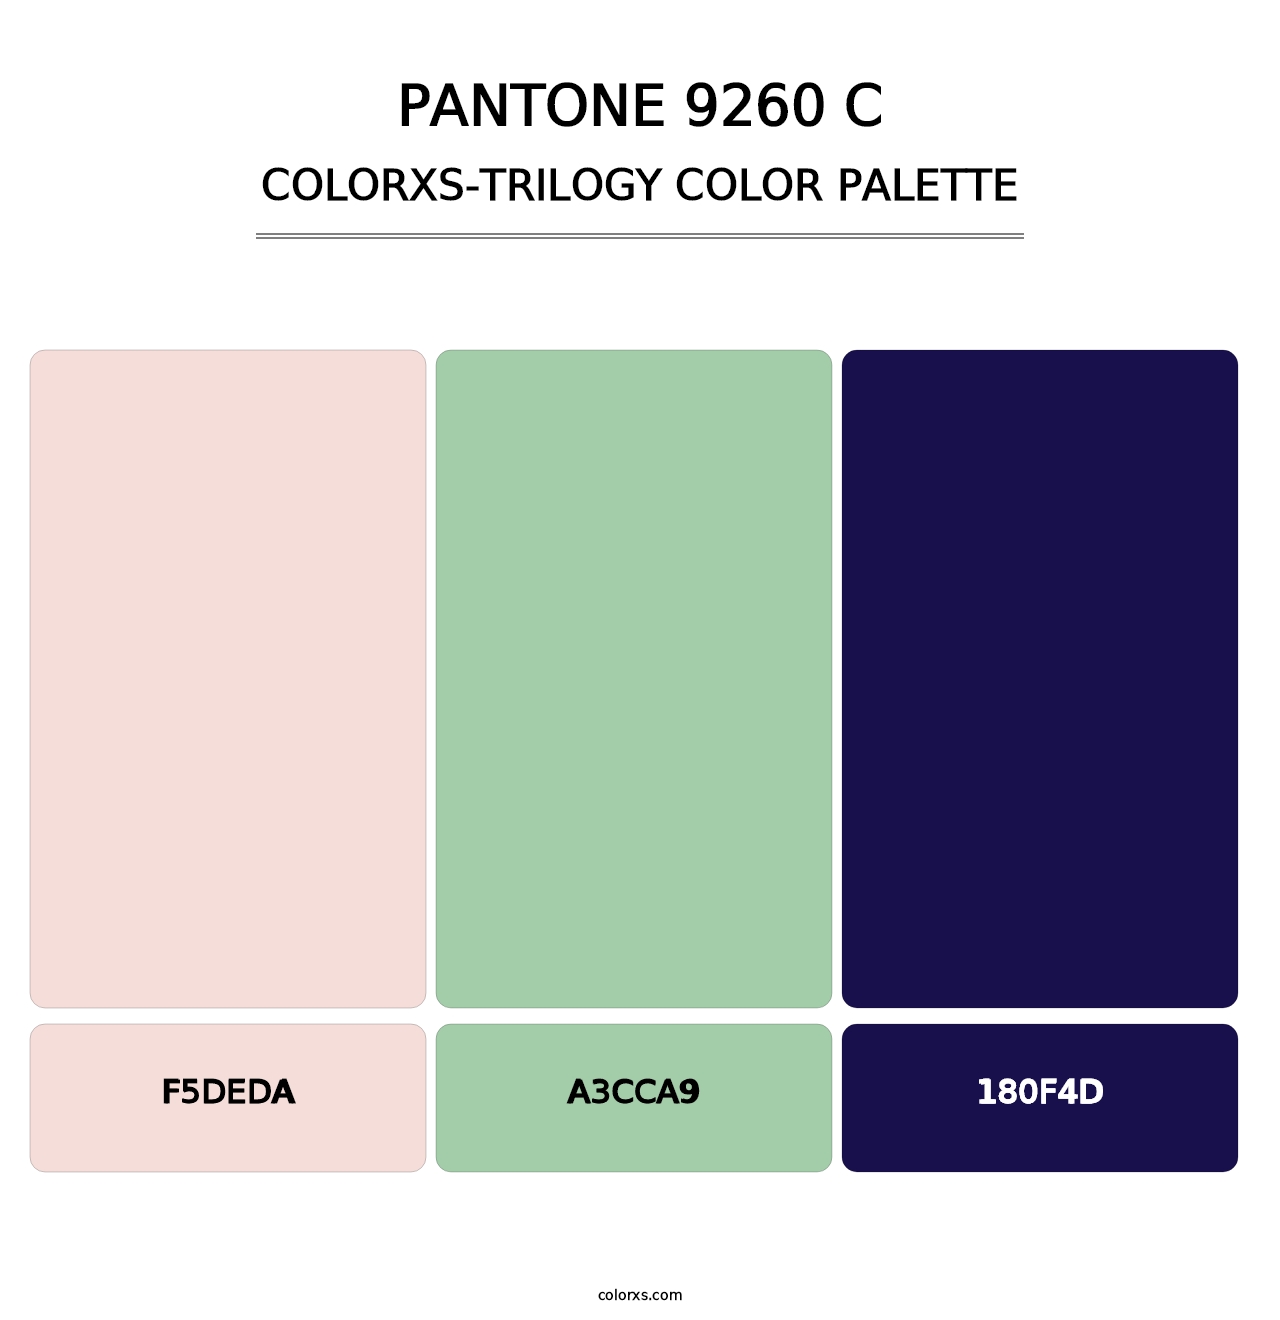 PANTONE 9260 C - Colorxs Trilogy Palette